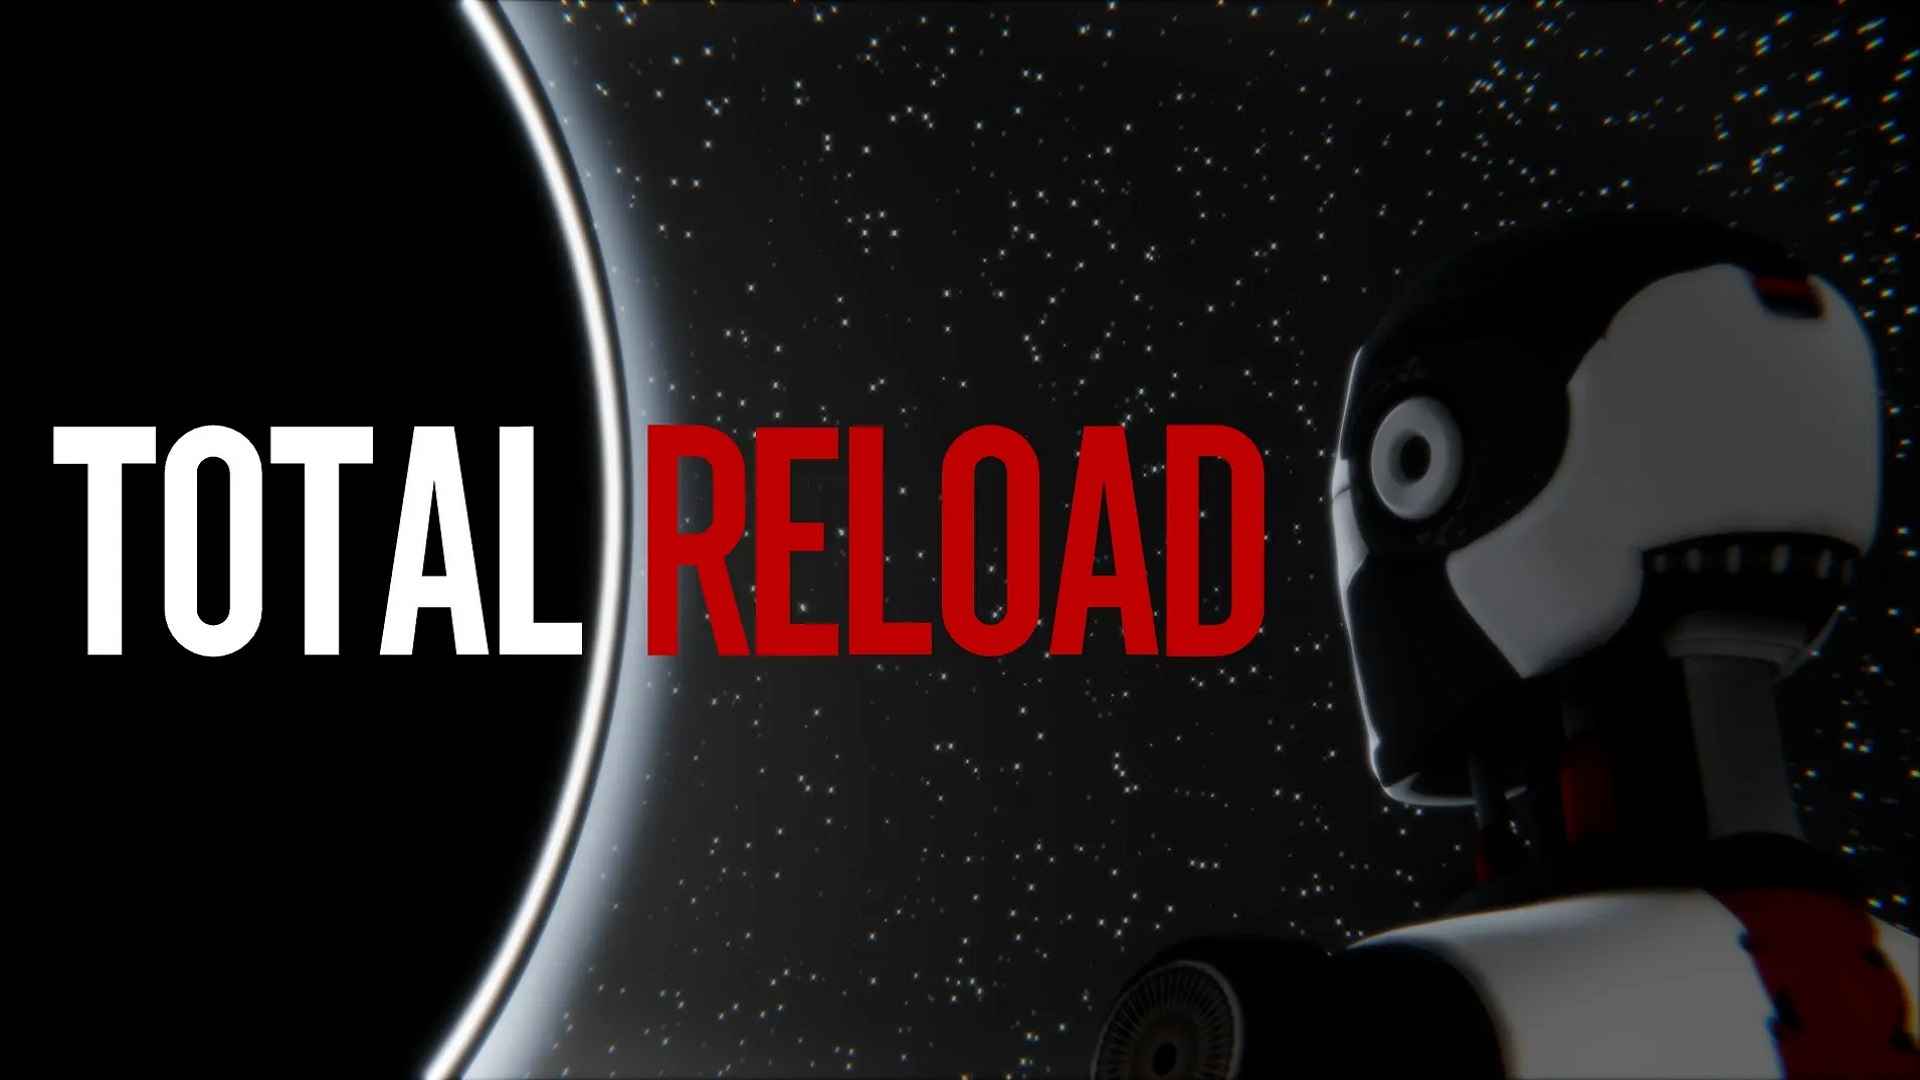 Total Reload става озадачаващо в новия трейлър на играта